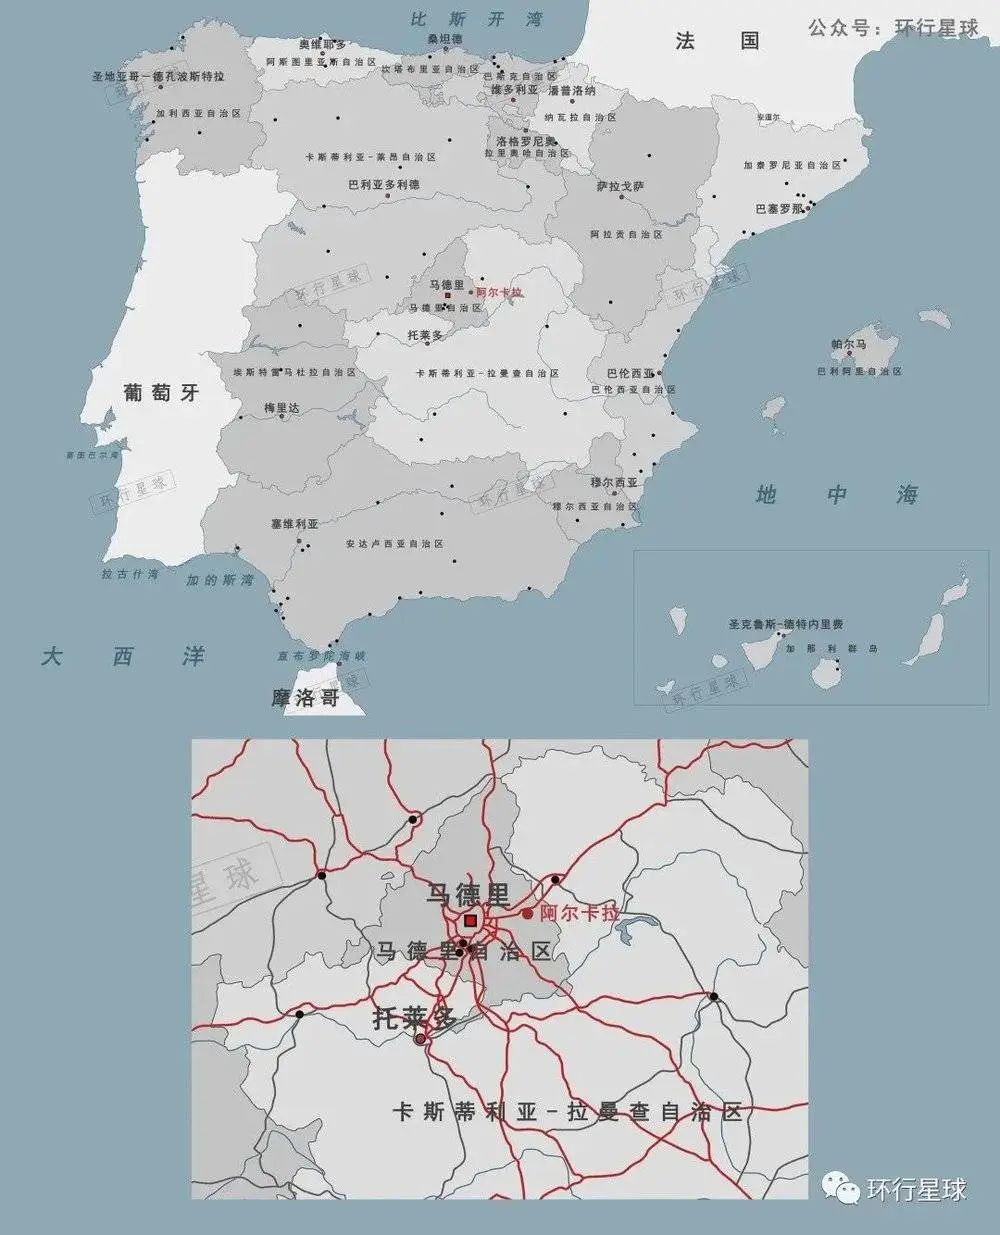 阿尔卡拉就位于西班牙首都马德里旁边，可谓紧邻西班牙文化中心